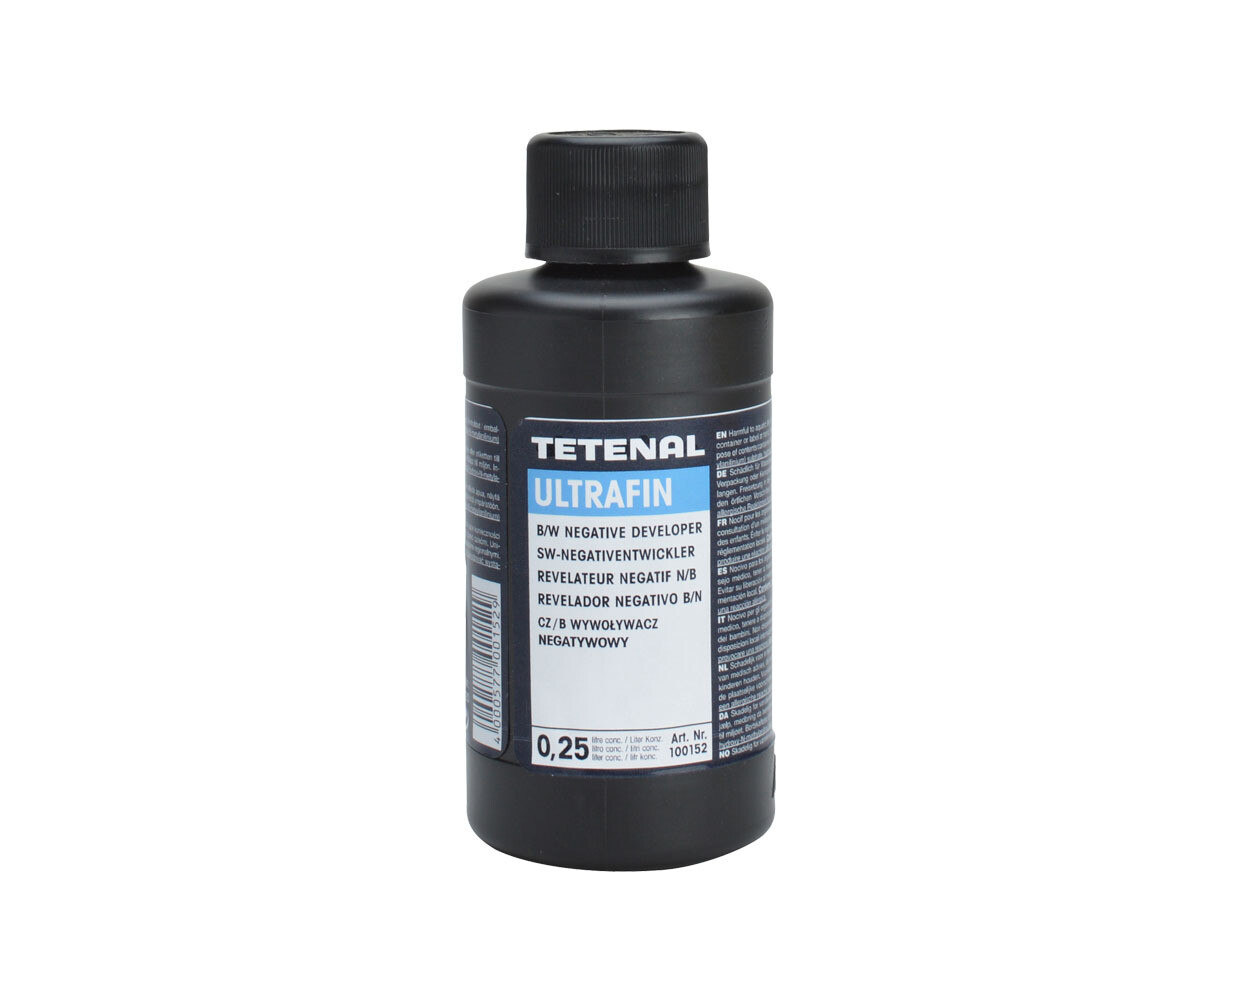 TETENAL Ultrafin Plus for Black & White Film - 0.25 Liter